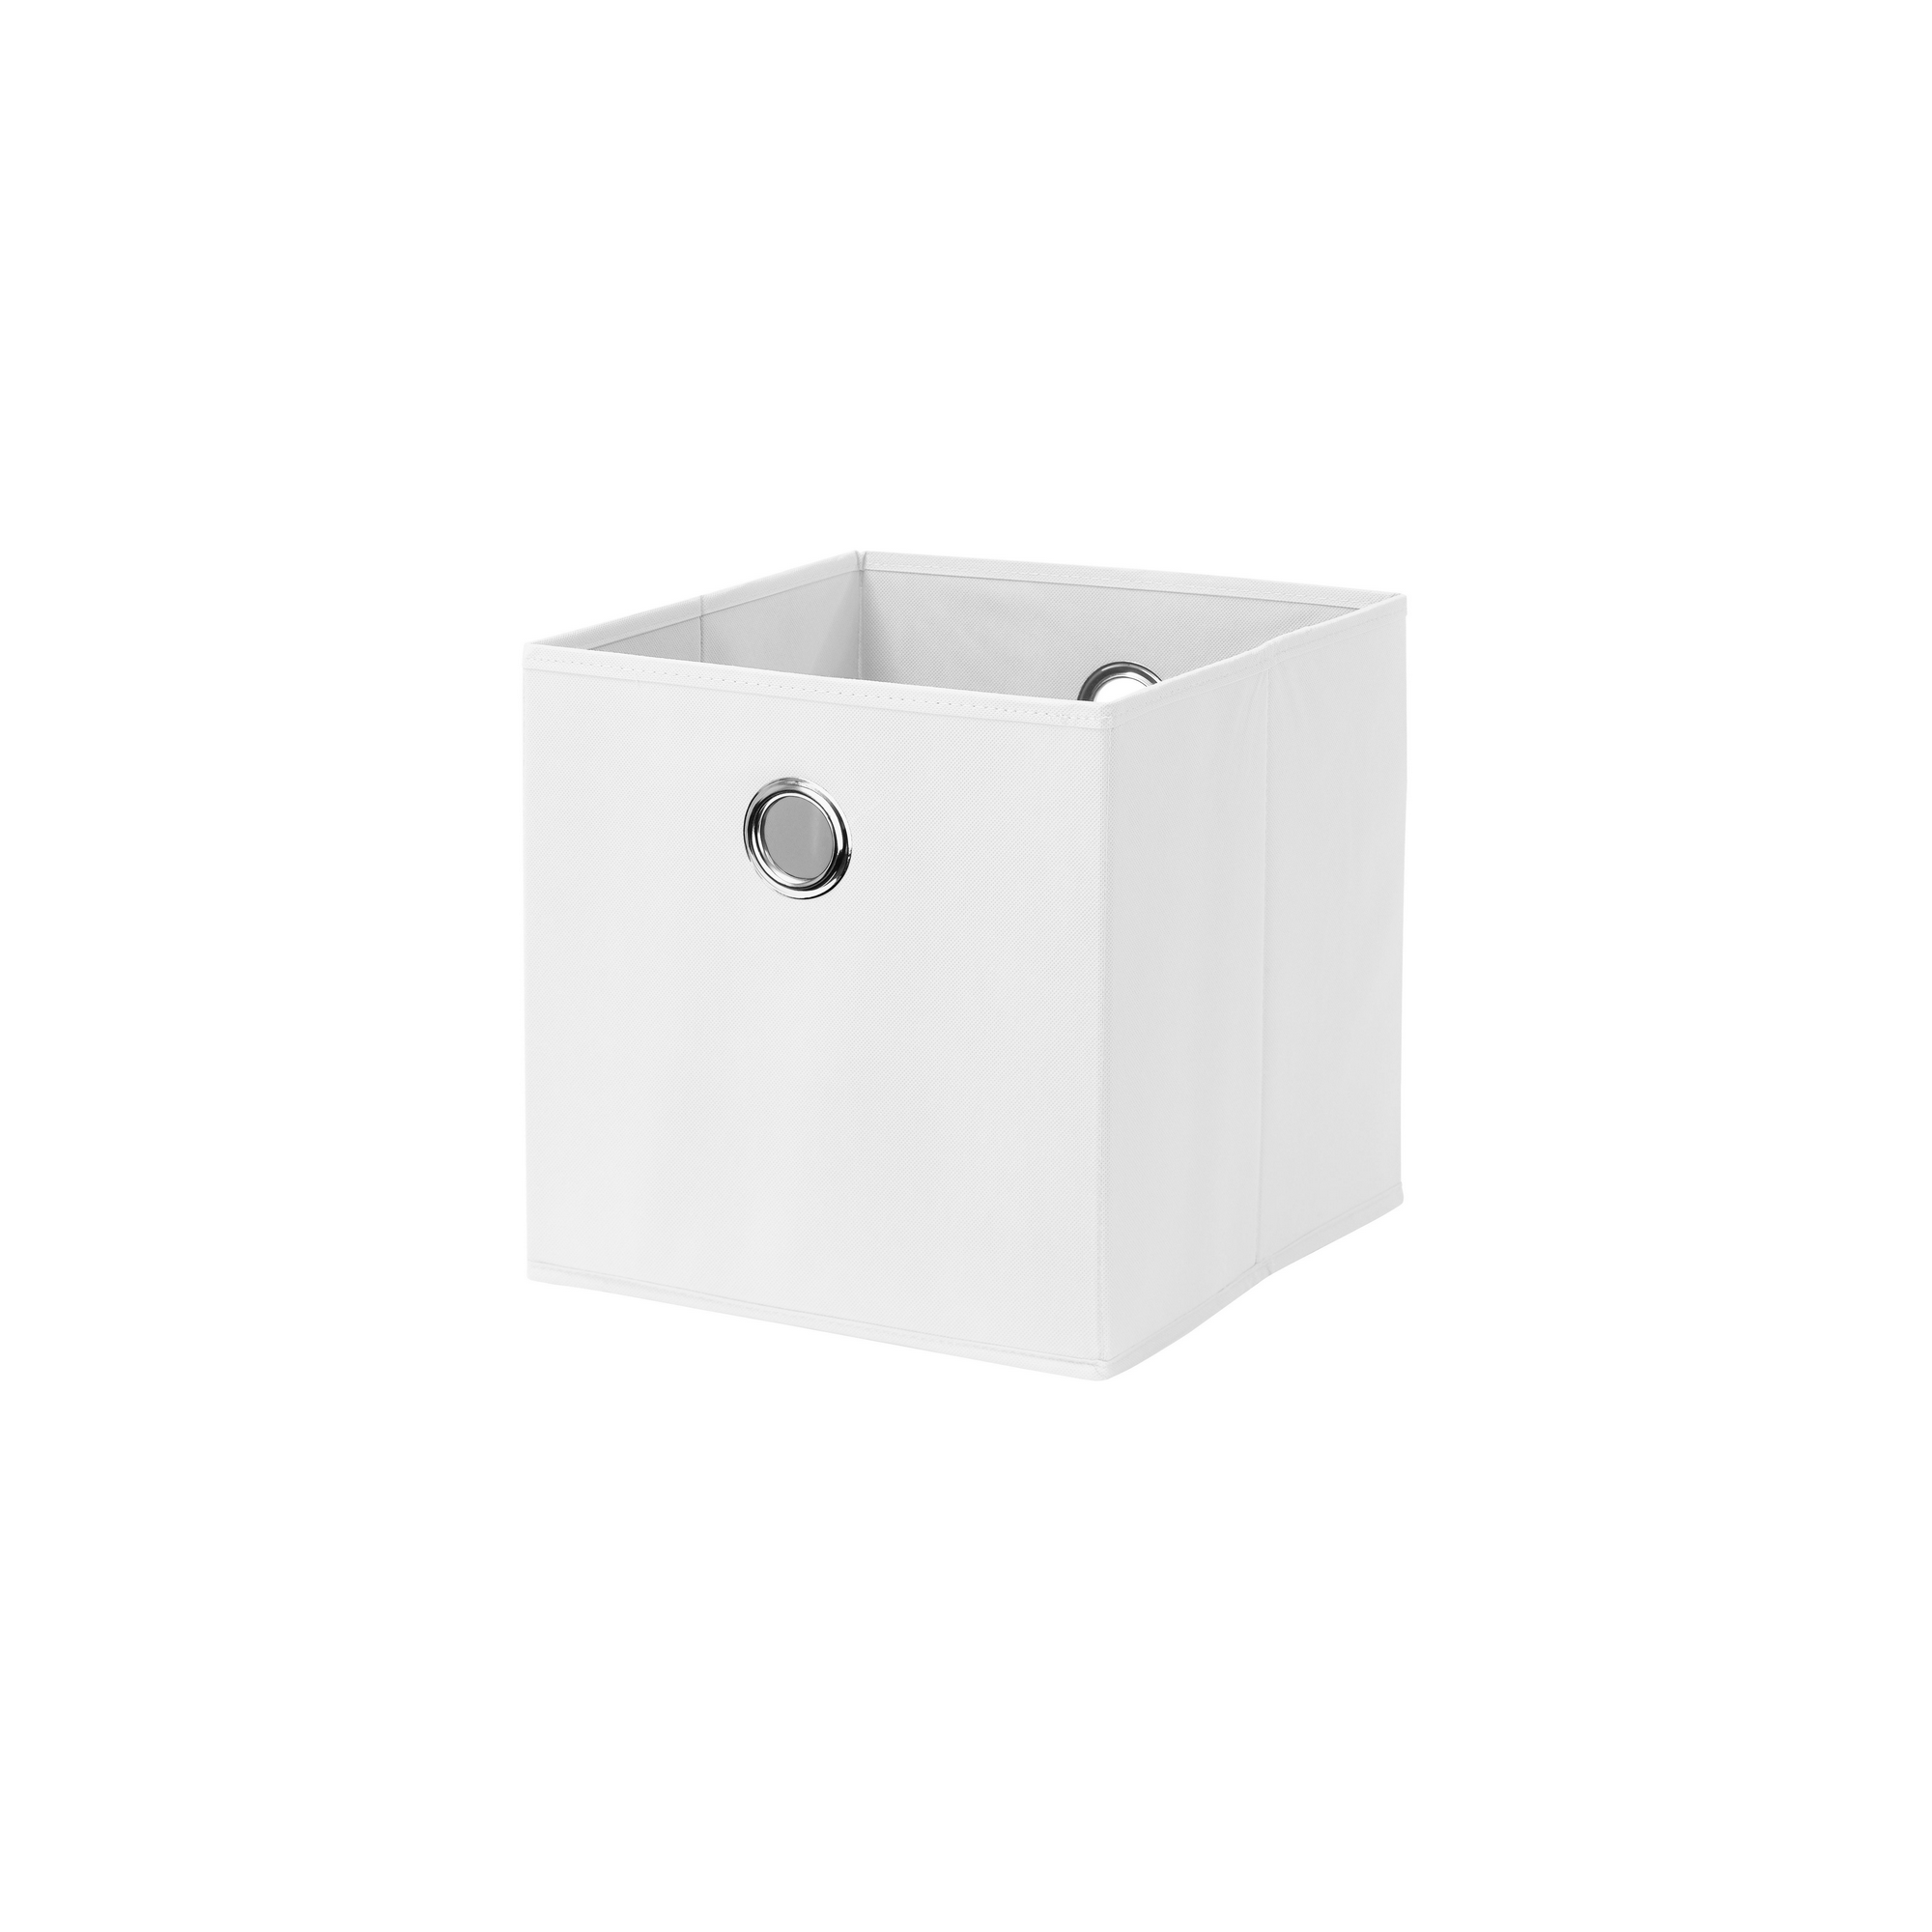 Stoff-Aufbewahrungsbox 'Boon' weiß 32 x 32 x 32 cm + product picture